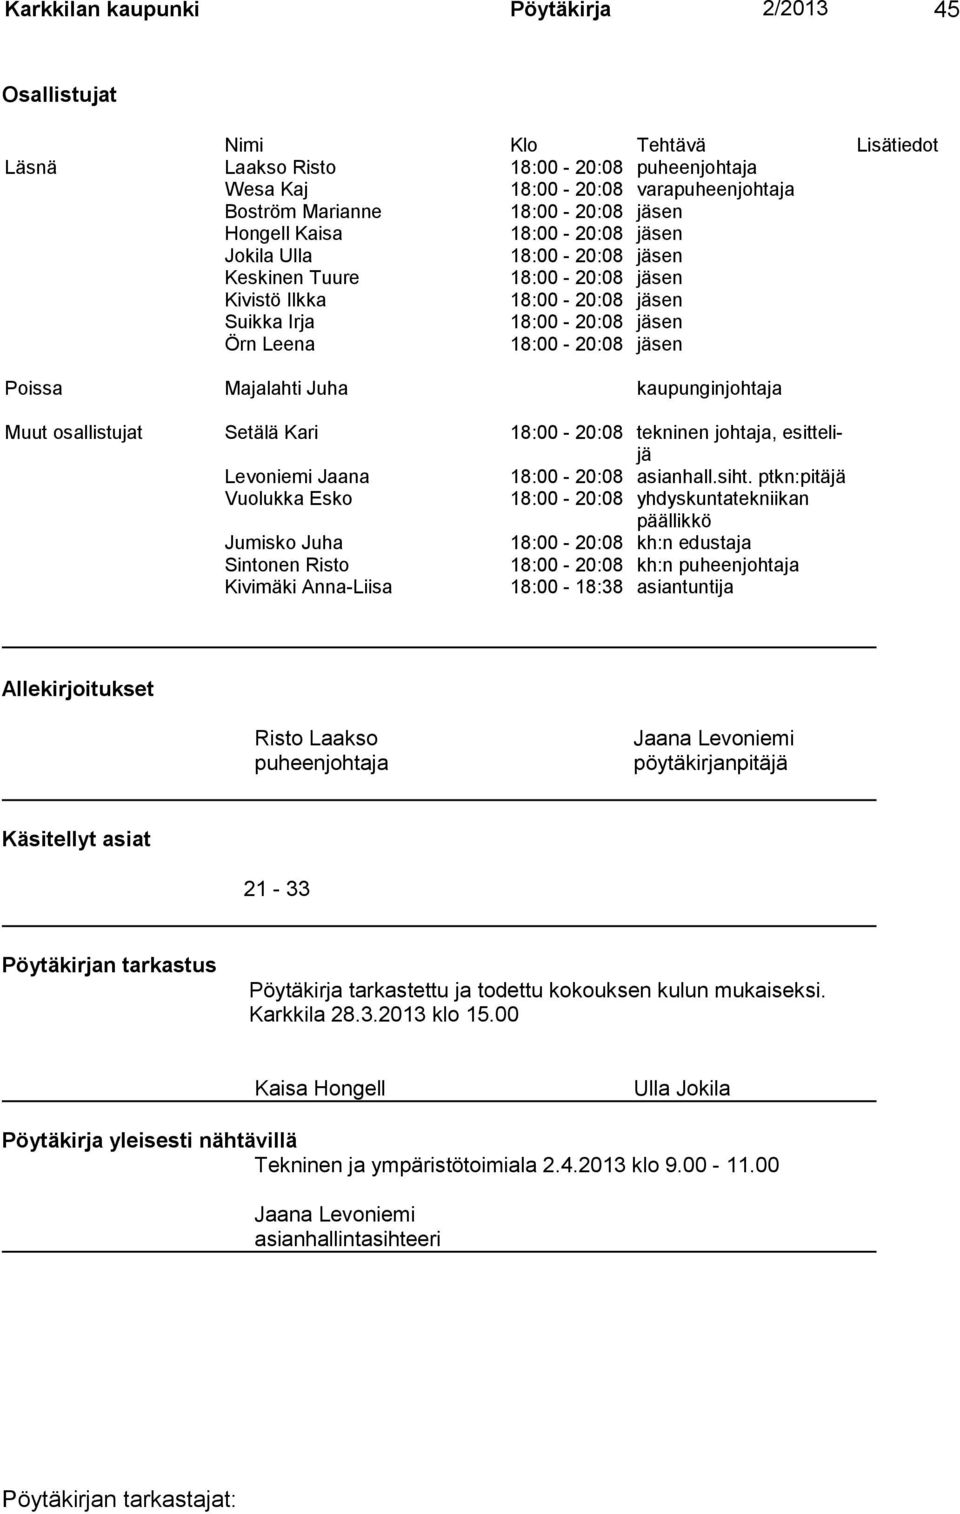 Majalahti Juha kaupunginjohtaja Muut osallistujat Setälä Kari 18:00-20:08 tekninen johtaja, esittelijä Levoniemi Jaana 18:00-20:08 asianhall.siht.